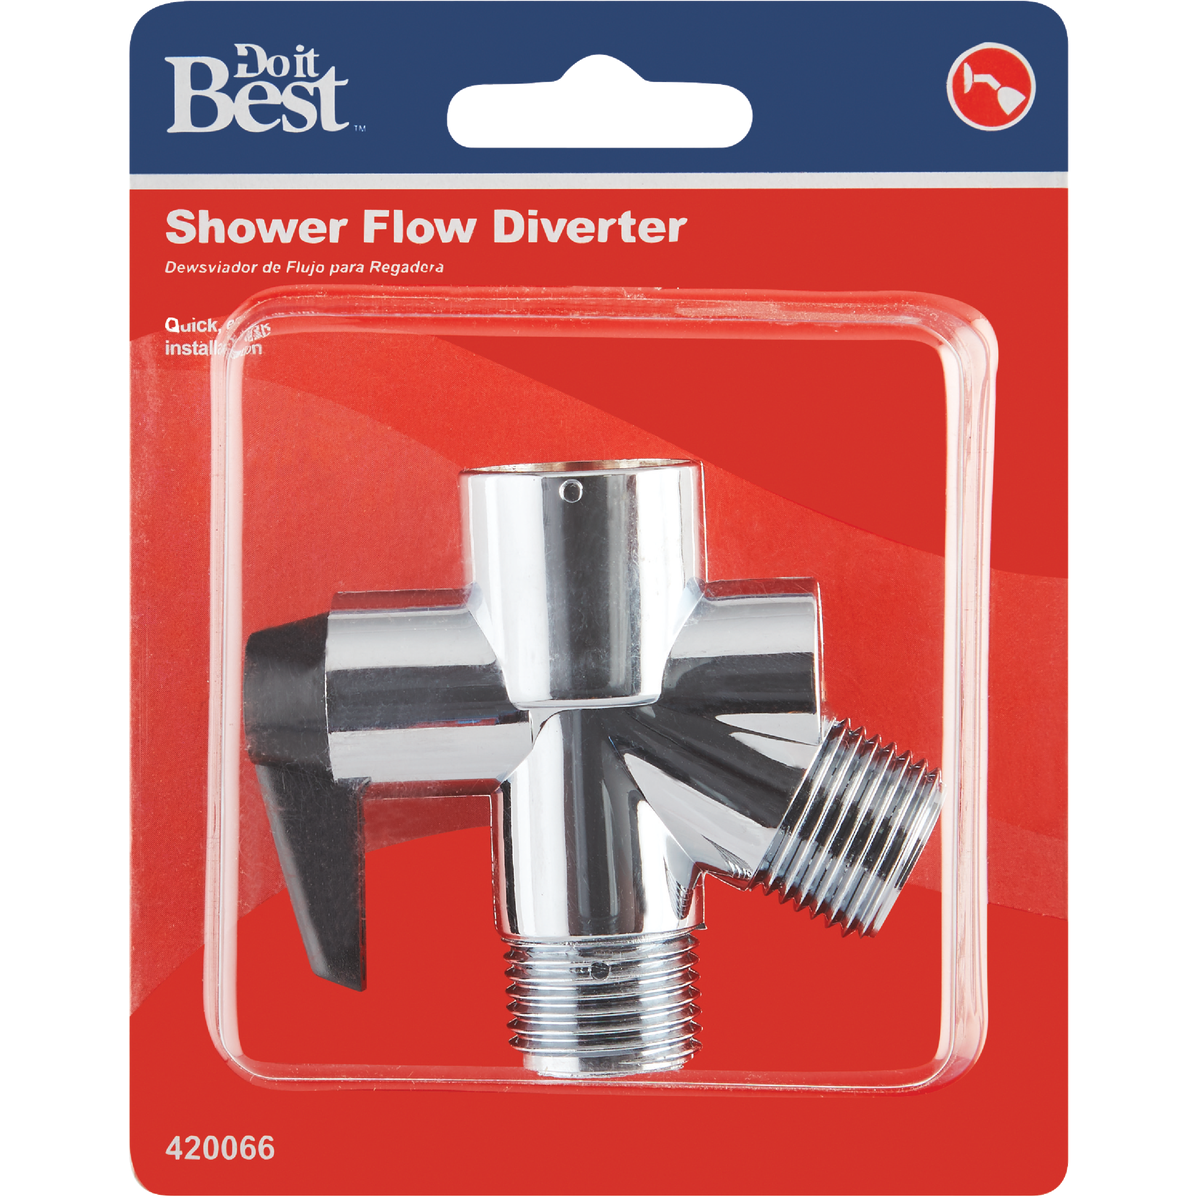 Shower Diverter